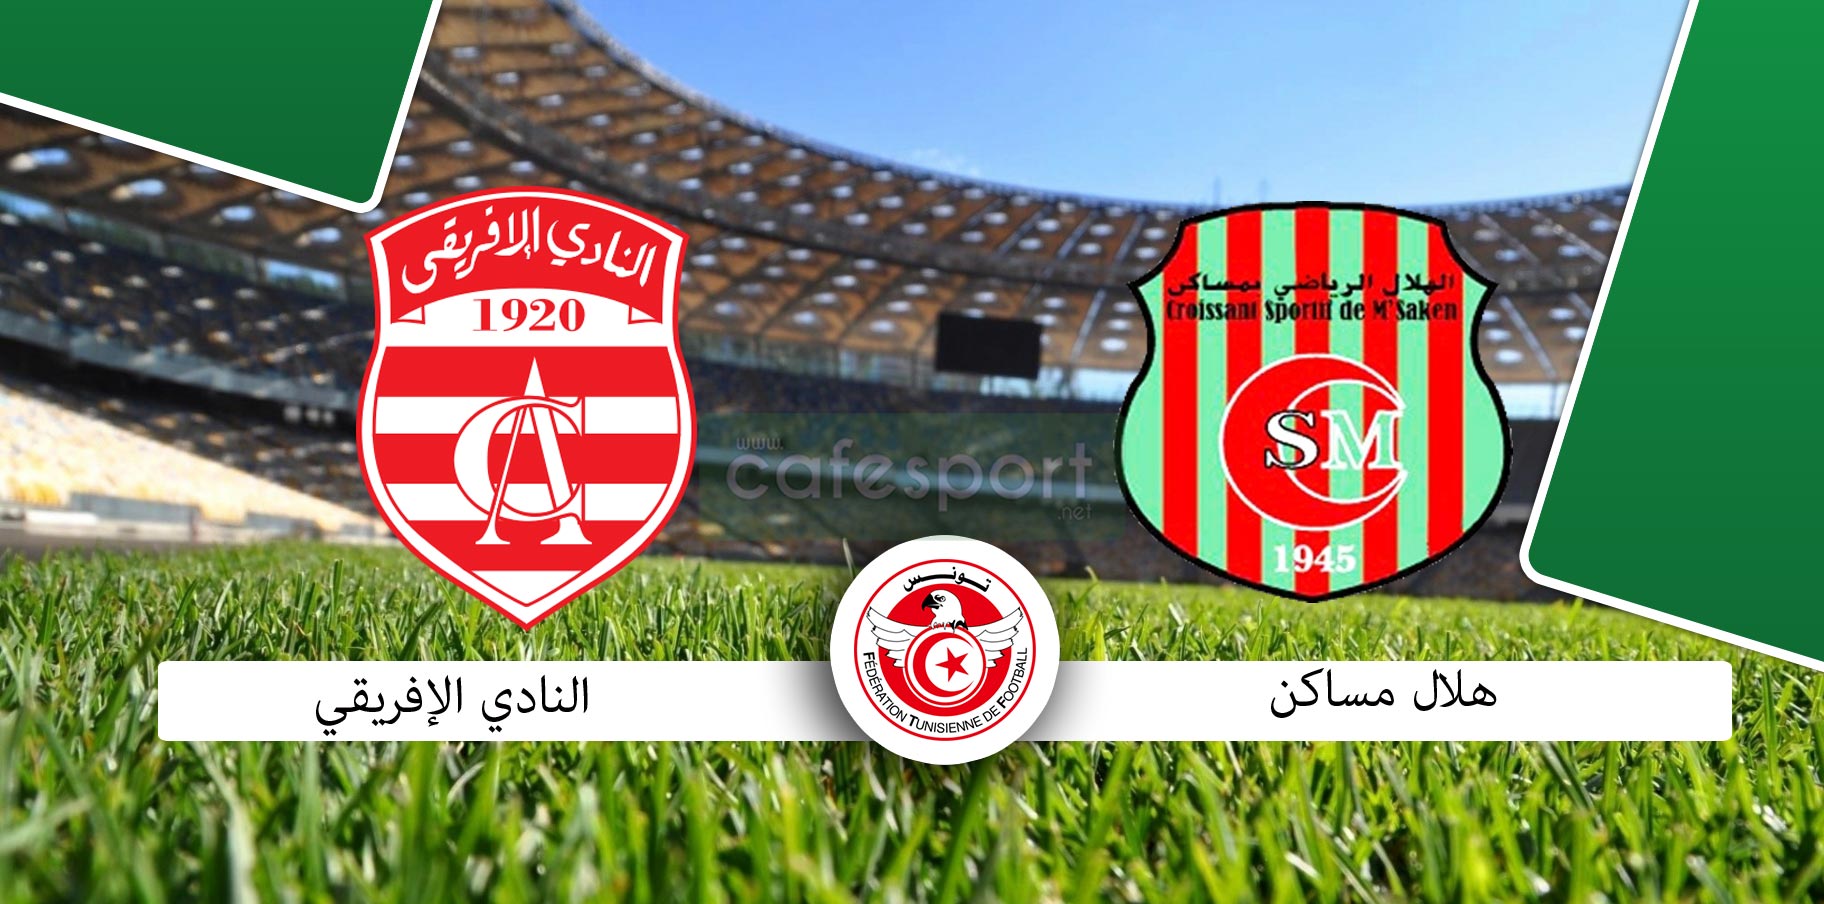 كأس تونس : ملخص حصري وأهداف لمقابلة الهلال الرياضي بمساكن و النادي الإفريقي